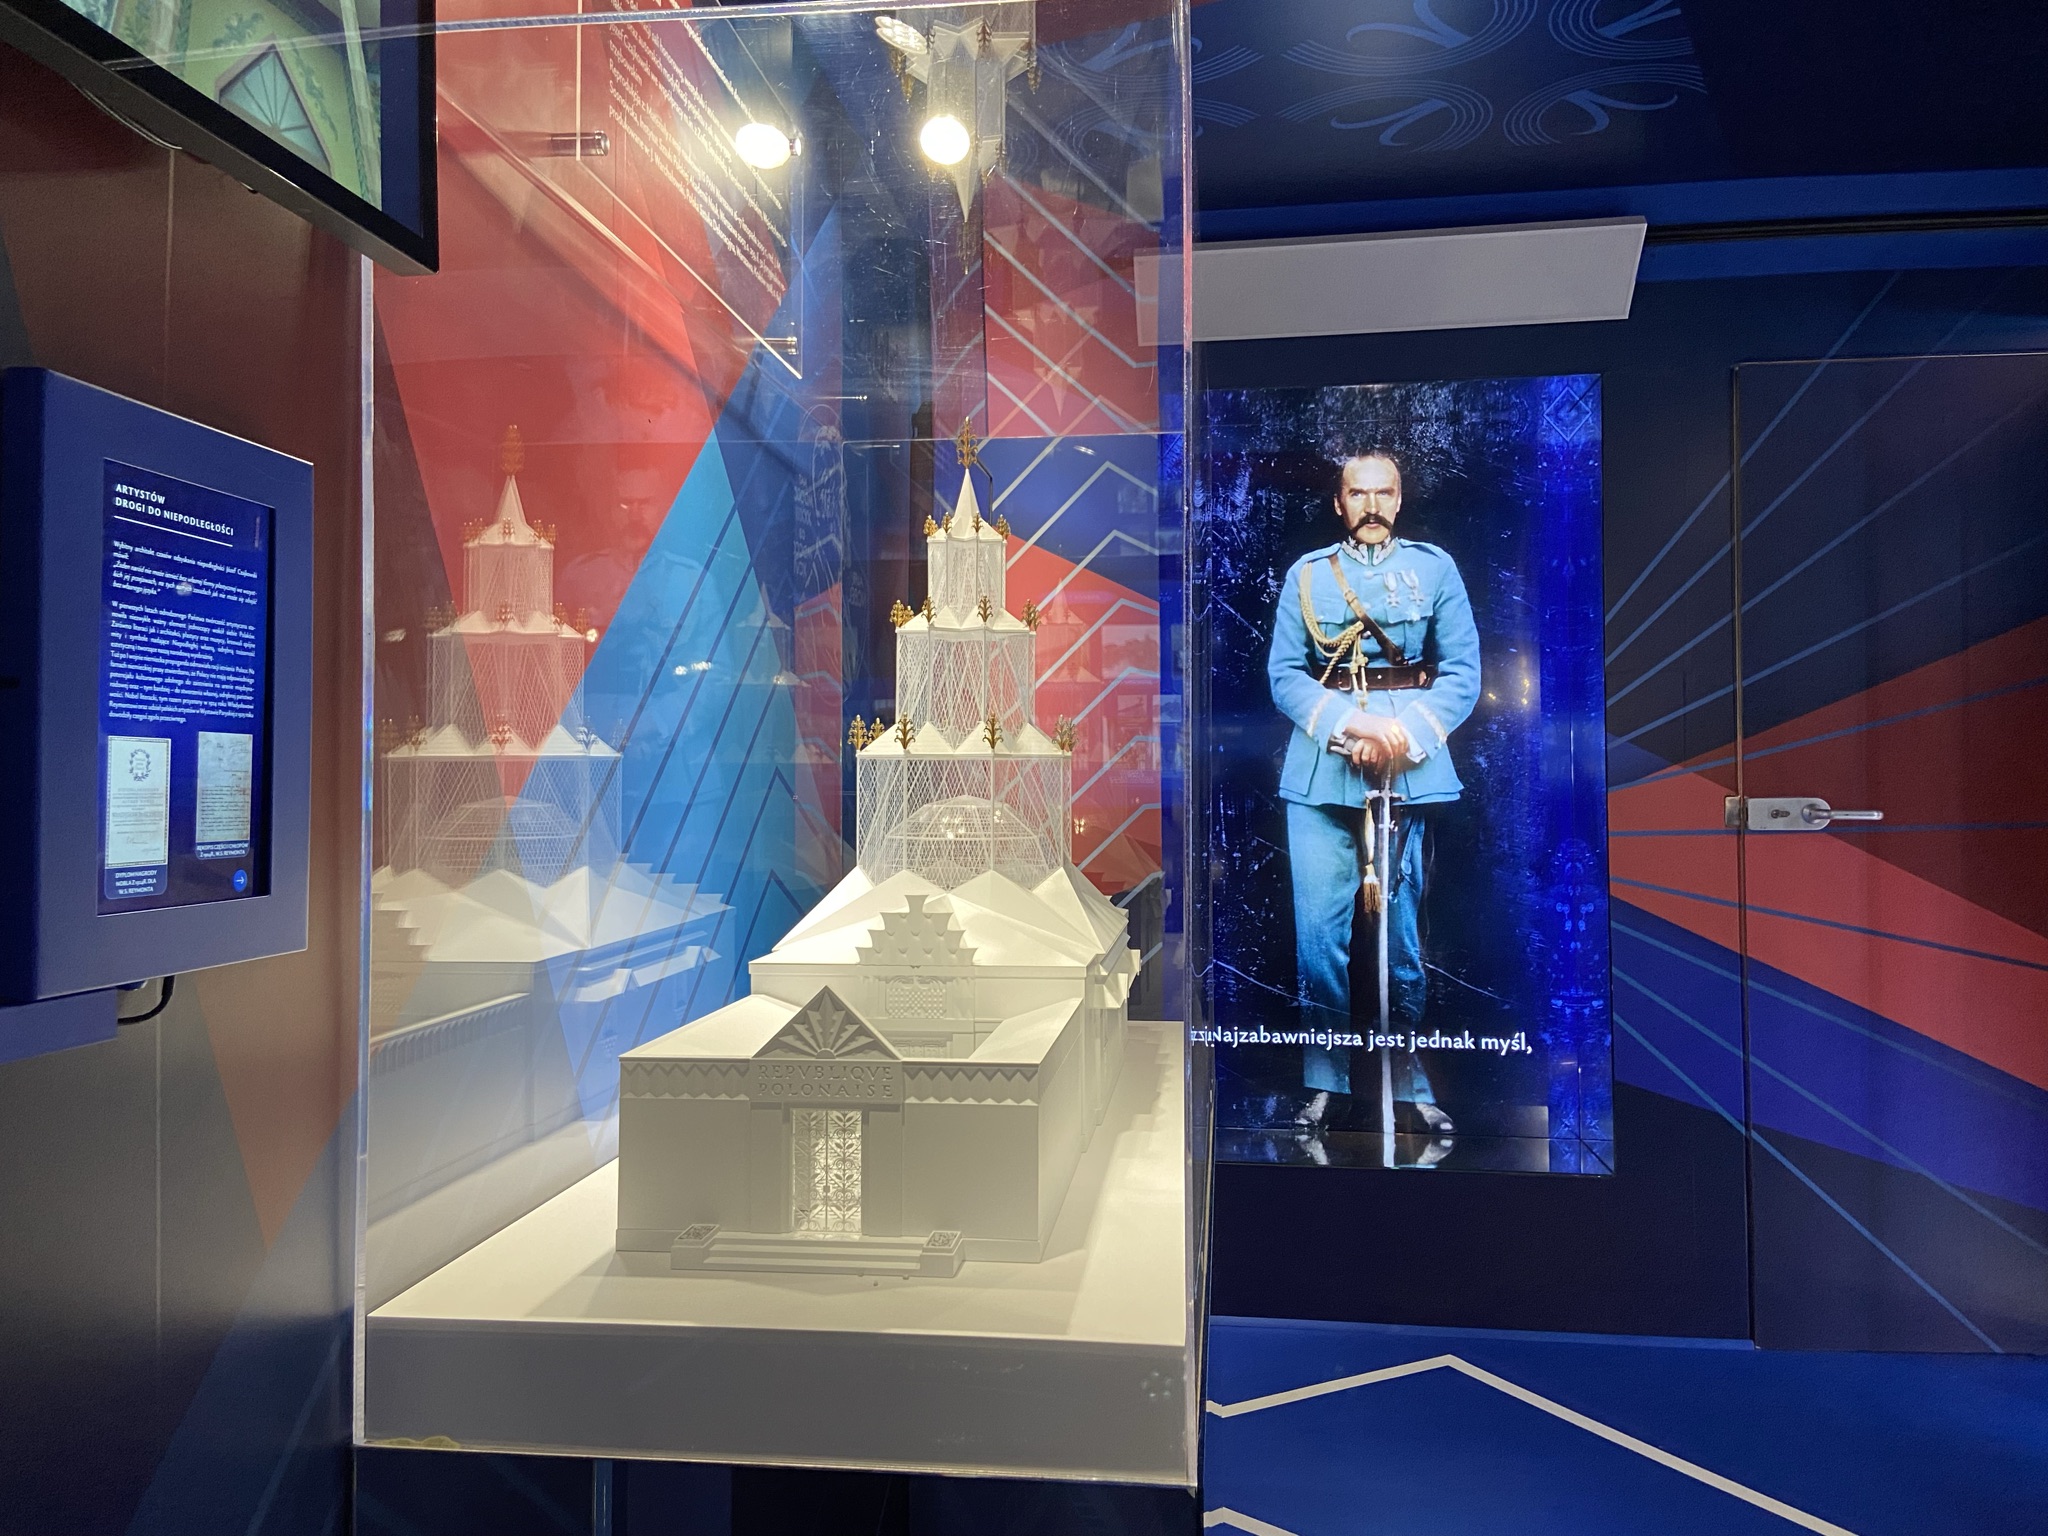 zdjęcie ukazujące makietę pawilonu i hologram marszałka multimedialny i fragment dekoracji graficznej wnętrza tira